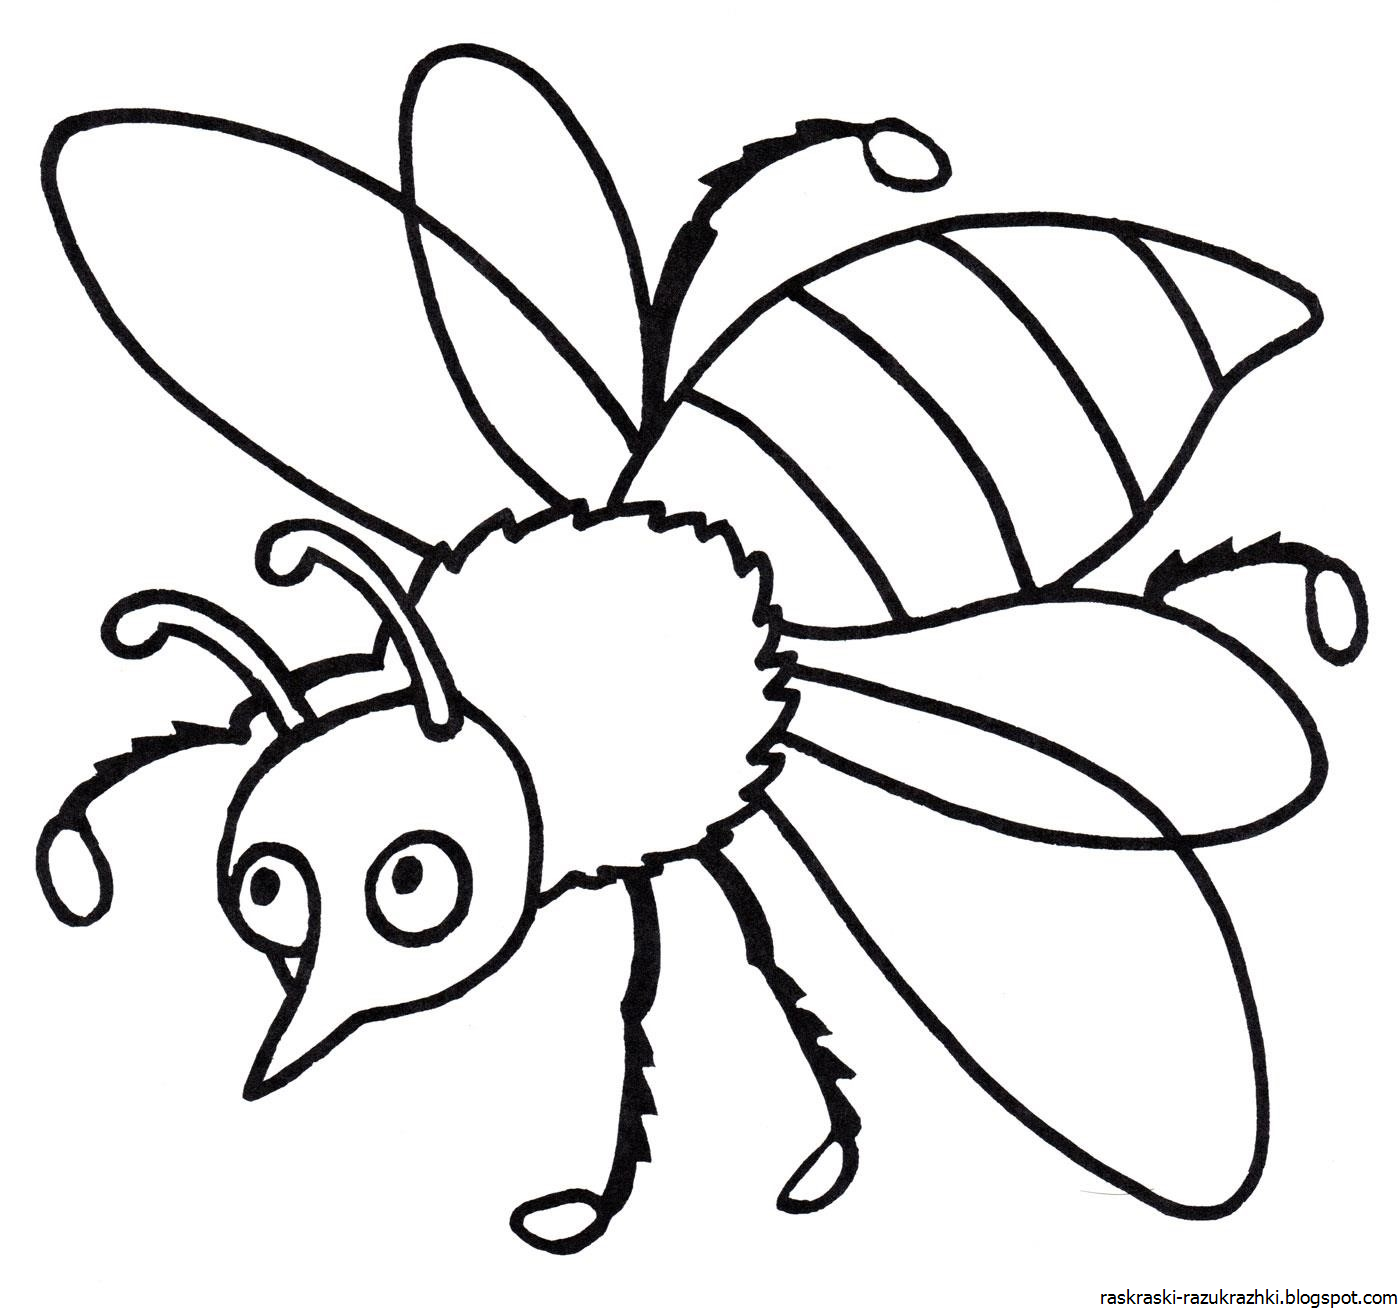 Раскраска насекомые для детей 7 лет. Насекомые раскраска для детей. Раскраски насекомые для детей 5-6 лет. Пчела раскраска. Раскраска насекомые для малышей.